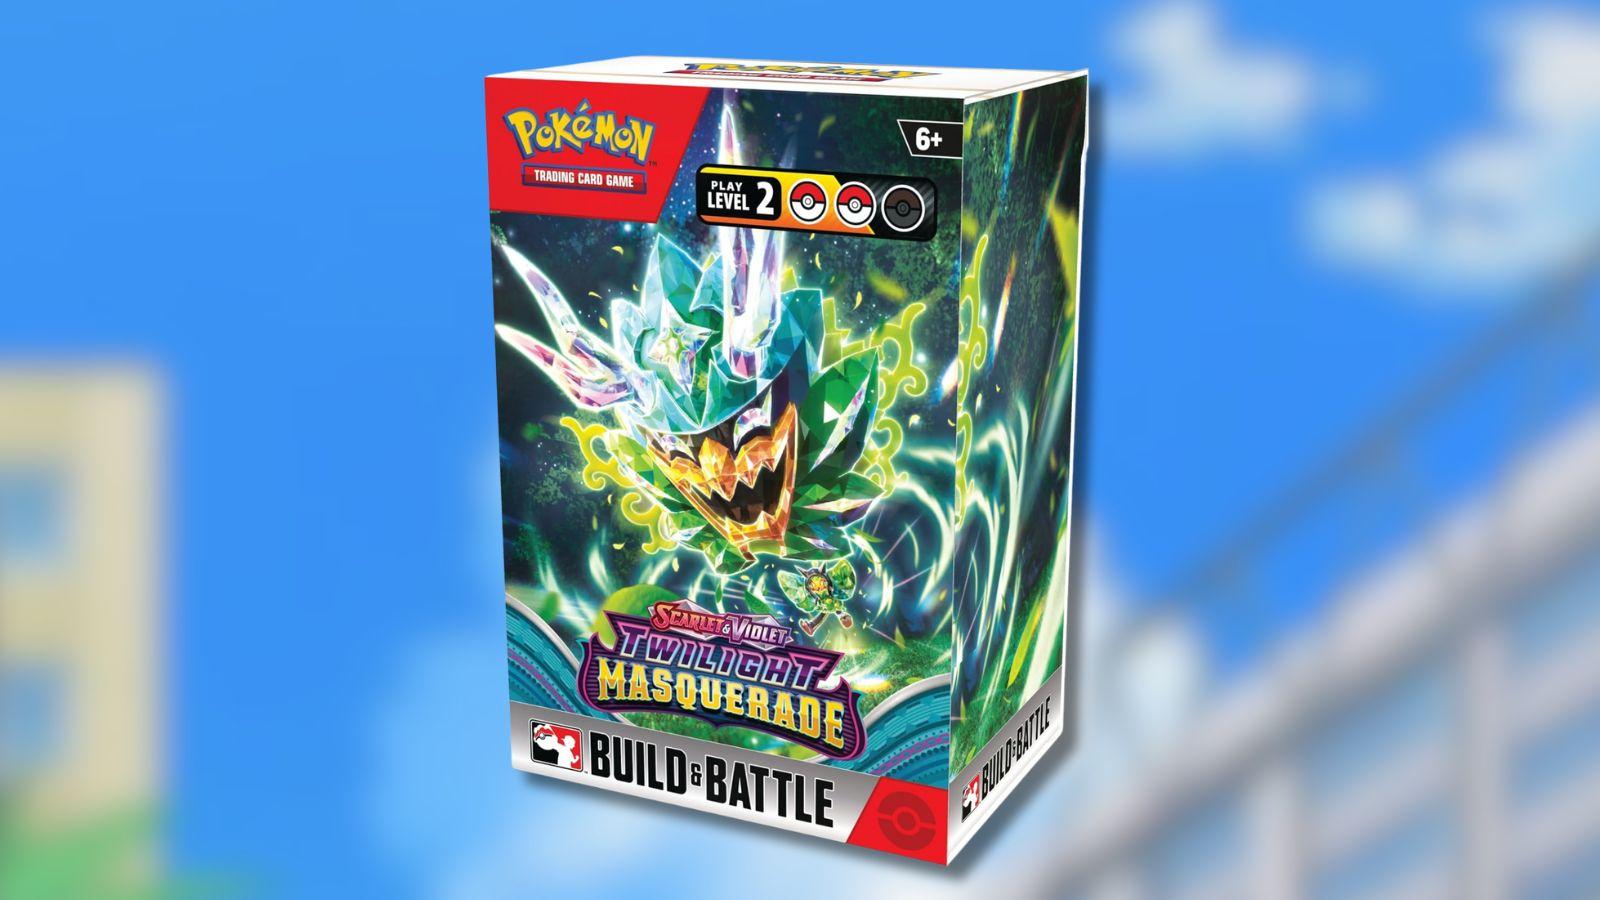 Pokemon TCG Twilight Masquerade Build and Battle Box product photo with Pokemon anime background.